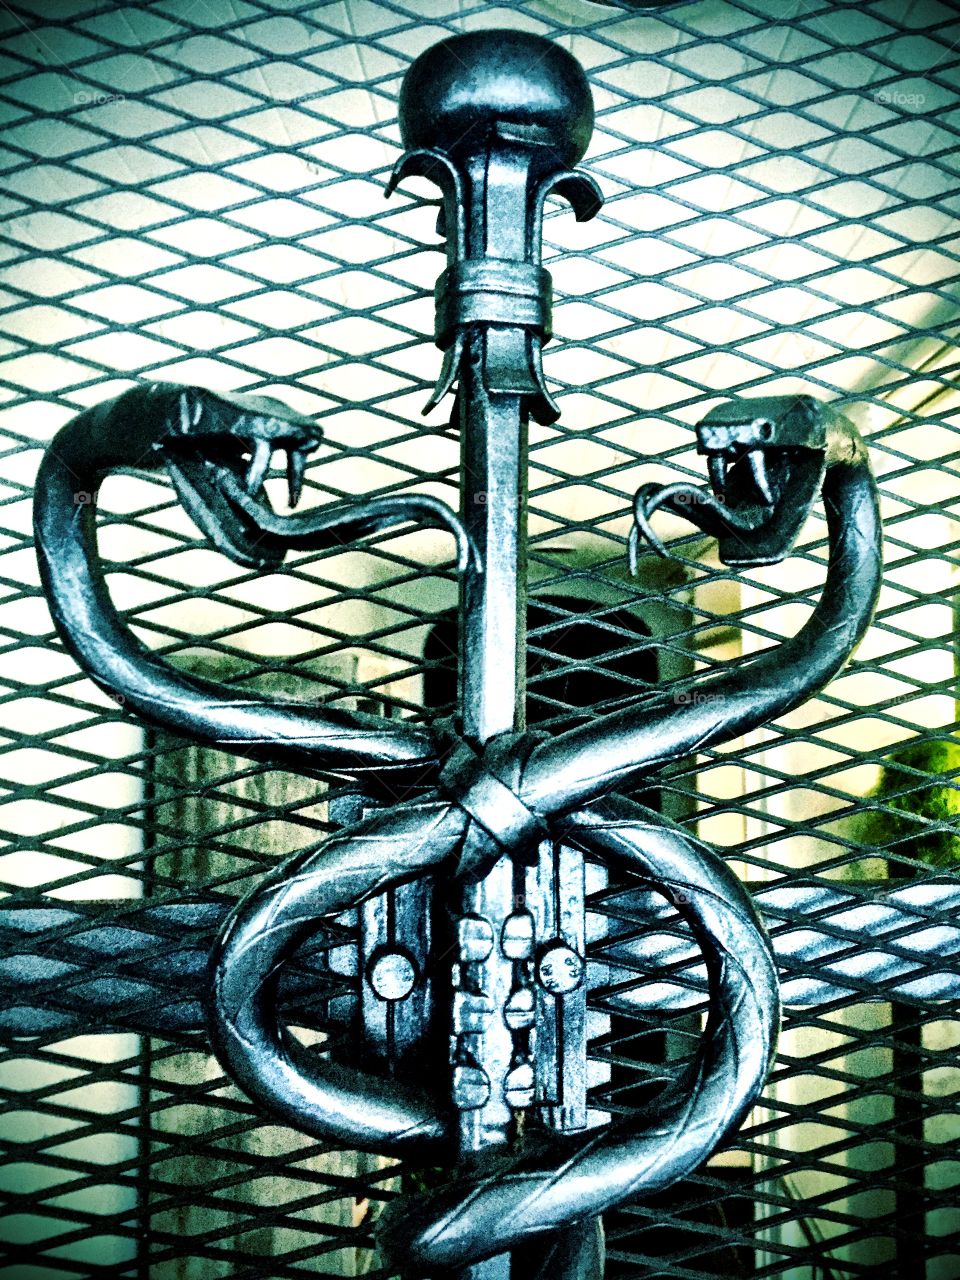 Snake serpent sculpture in steel intertwining in front of a steel wire mesh door